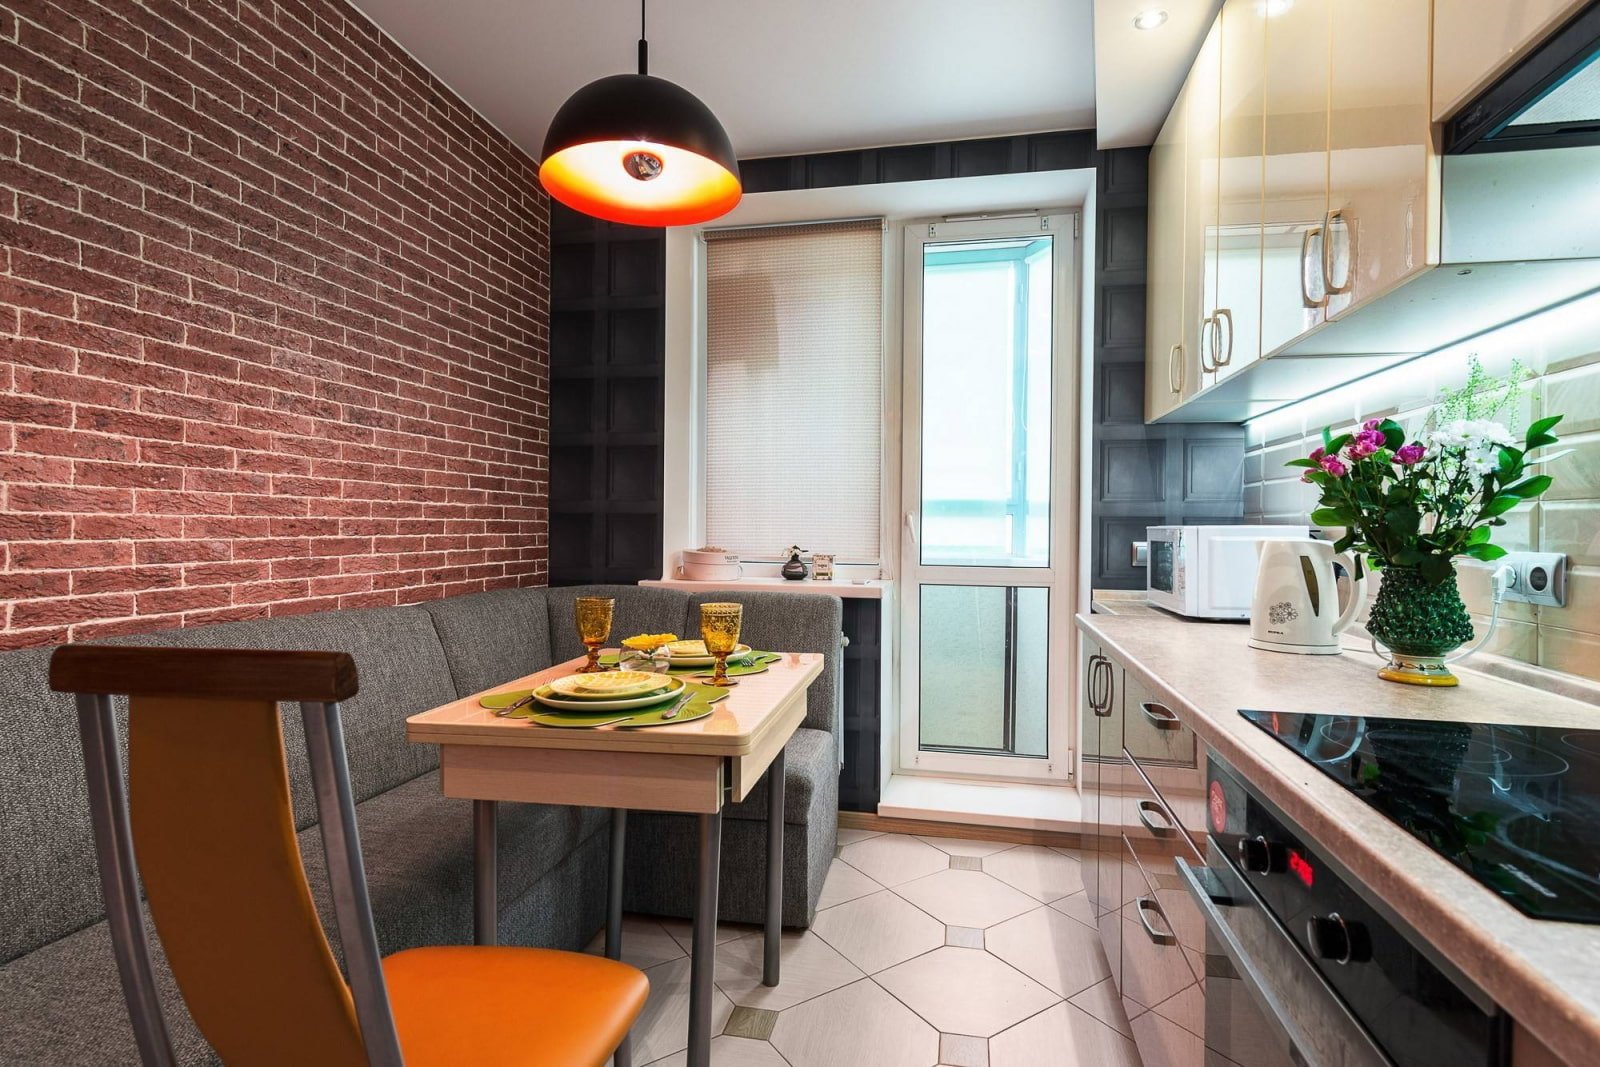 Дизайн кухни 9 кв м: 8 важных пунктов интерьер и дизайн